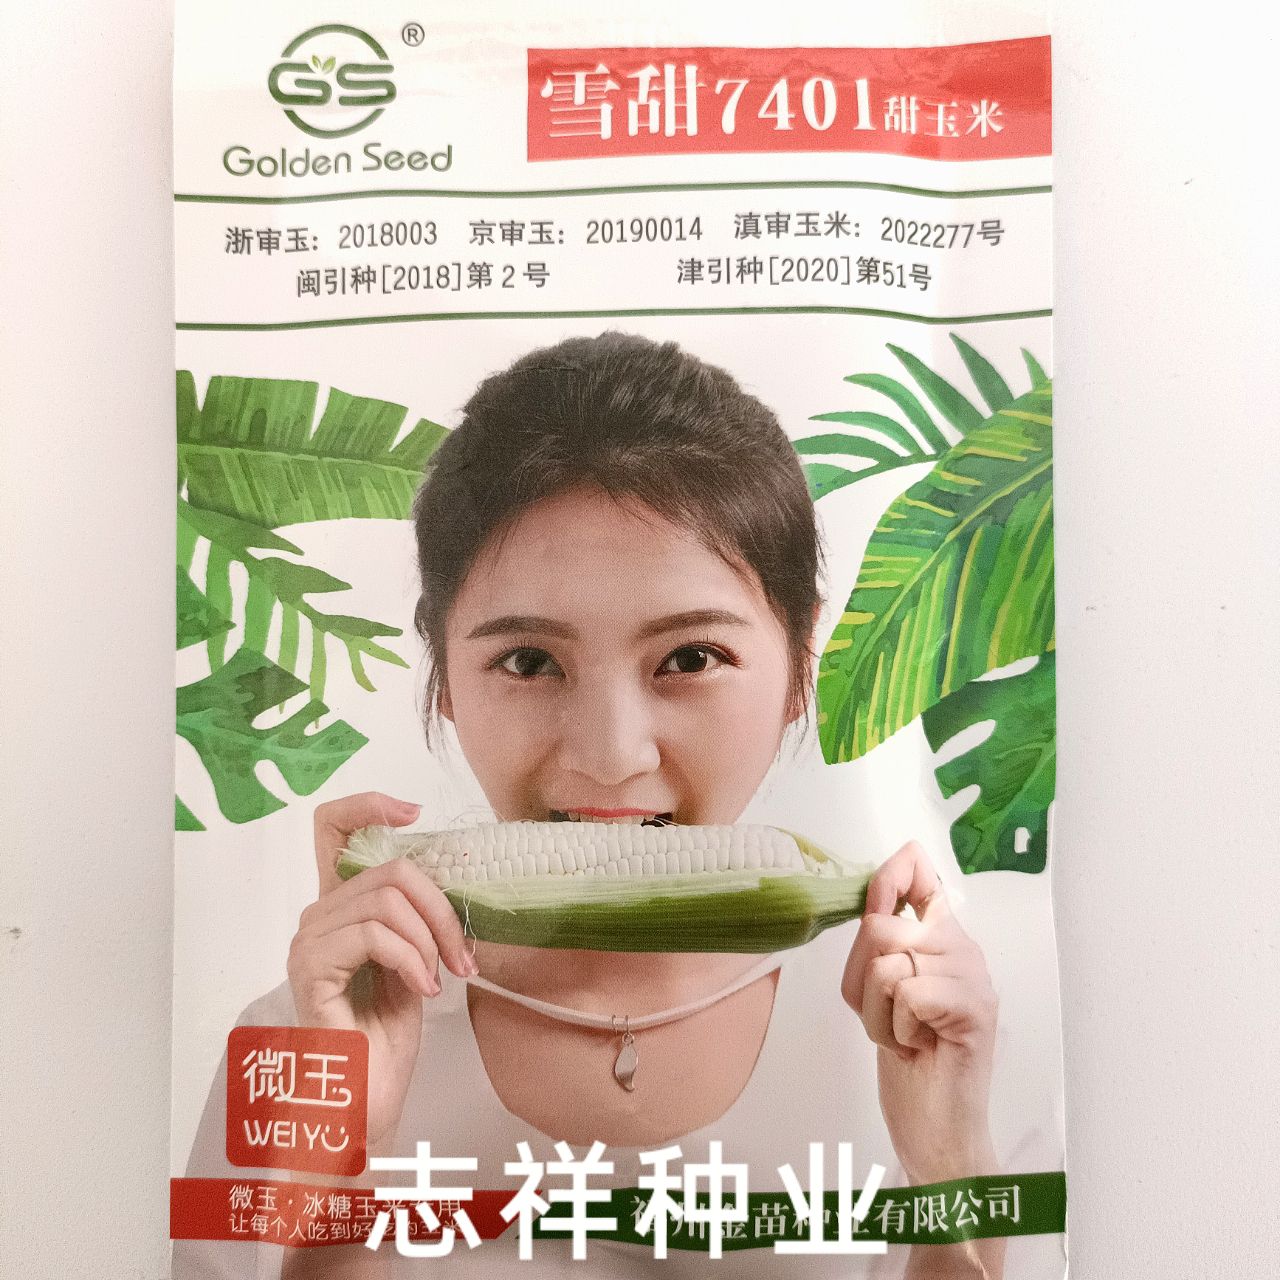 华容县雪甜7401甜玉米种子杂交冰糖玉米可生吃的水果玉米白粒40克